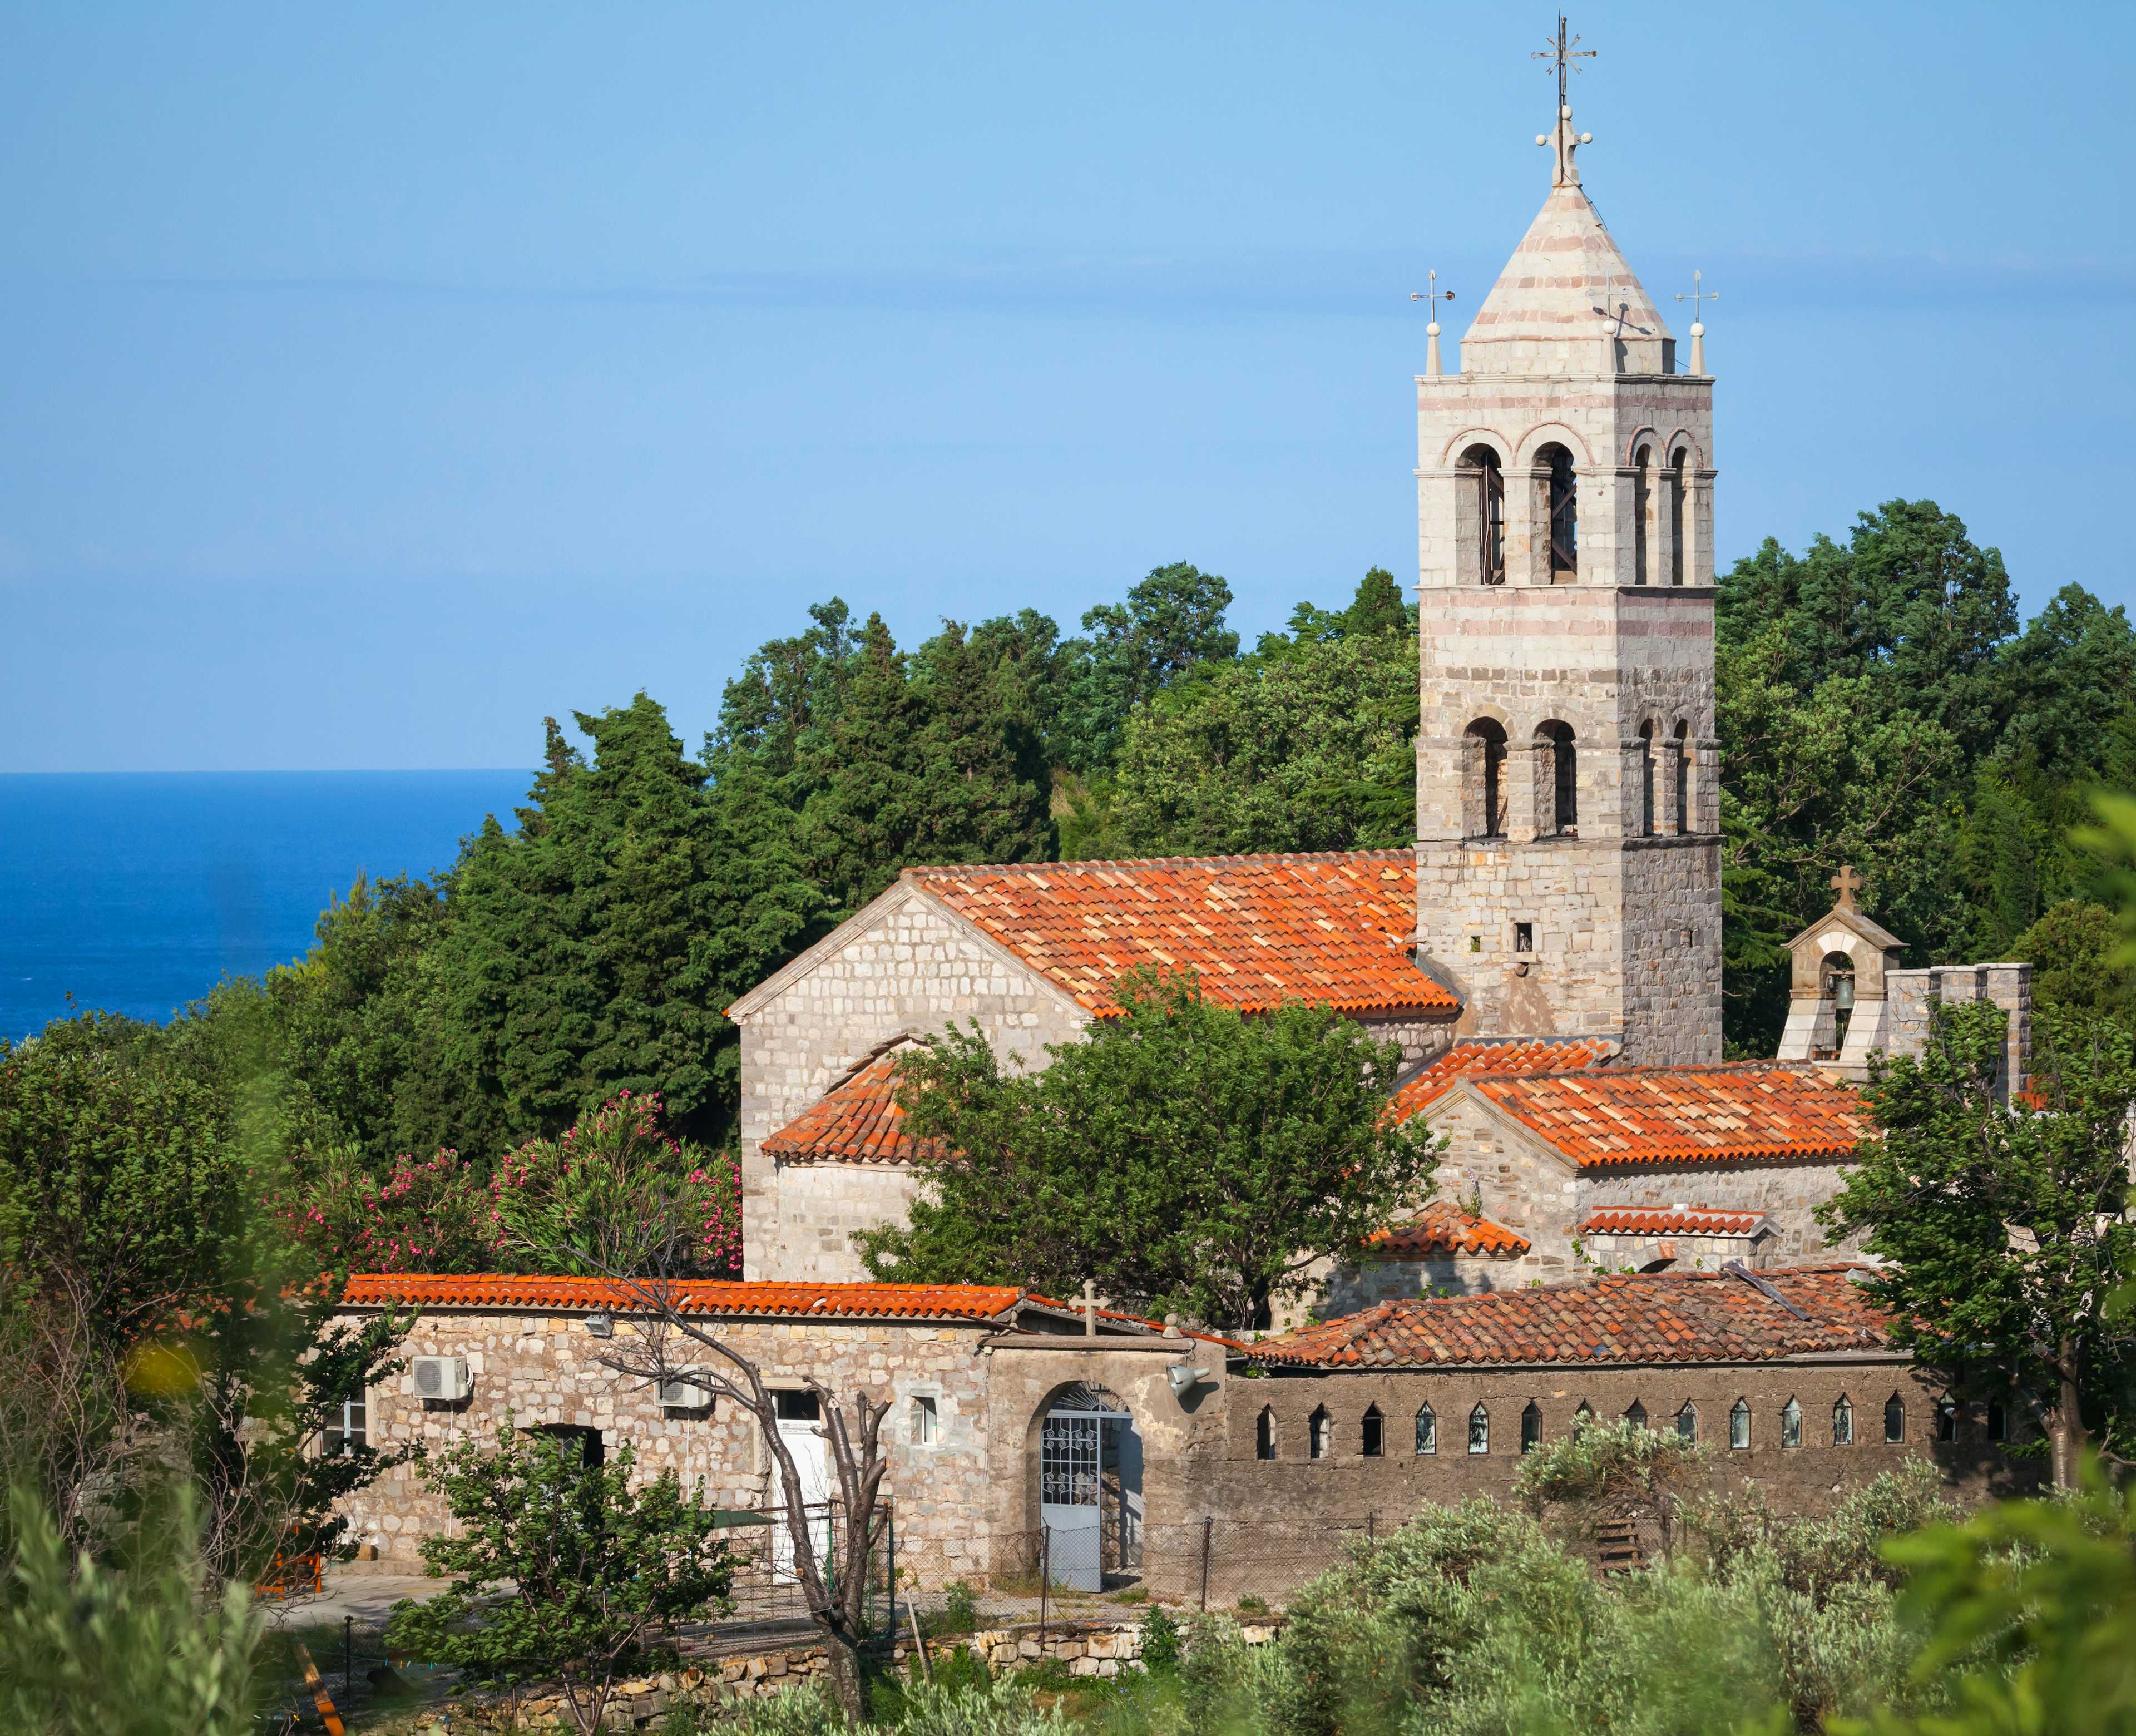 The Monastery of Rezevici